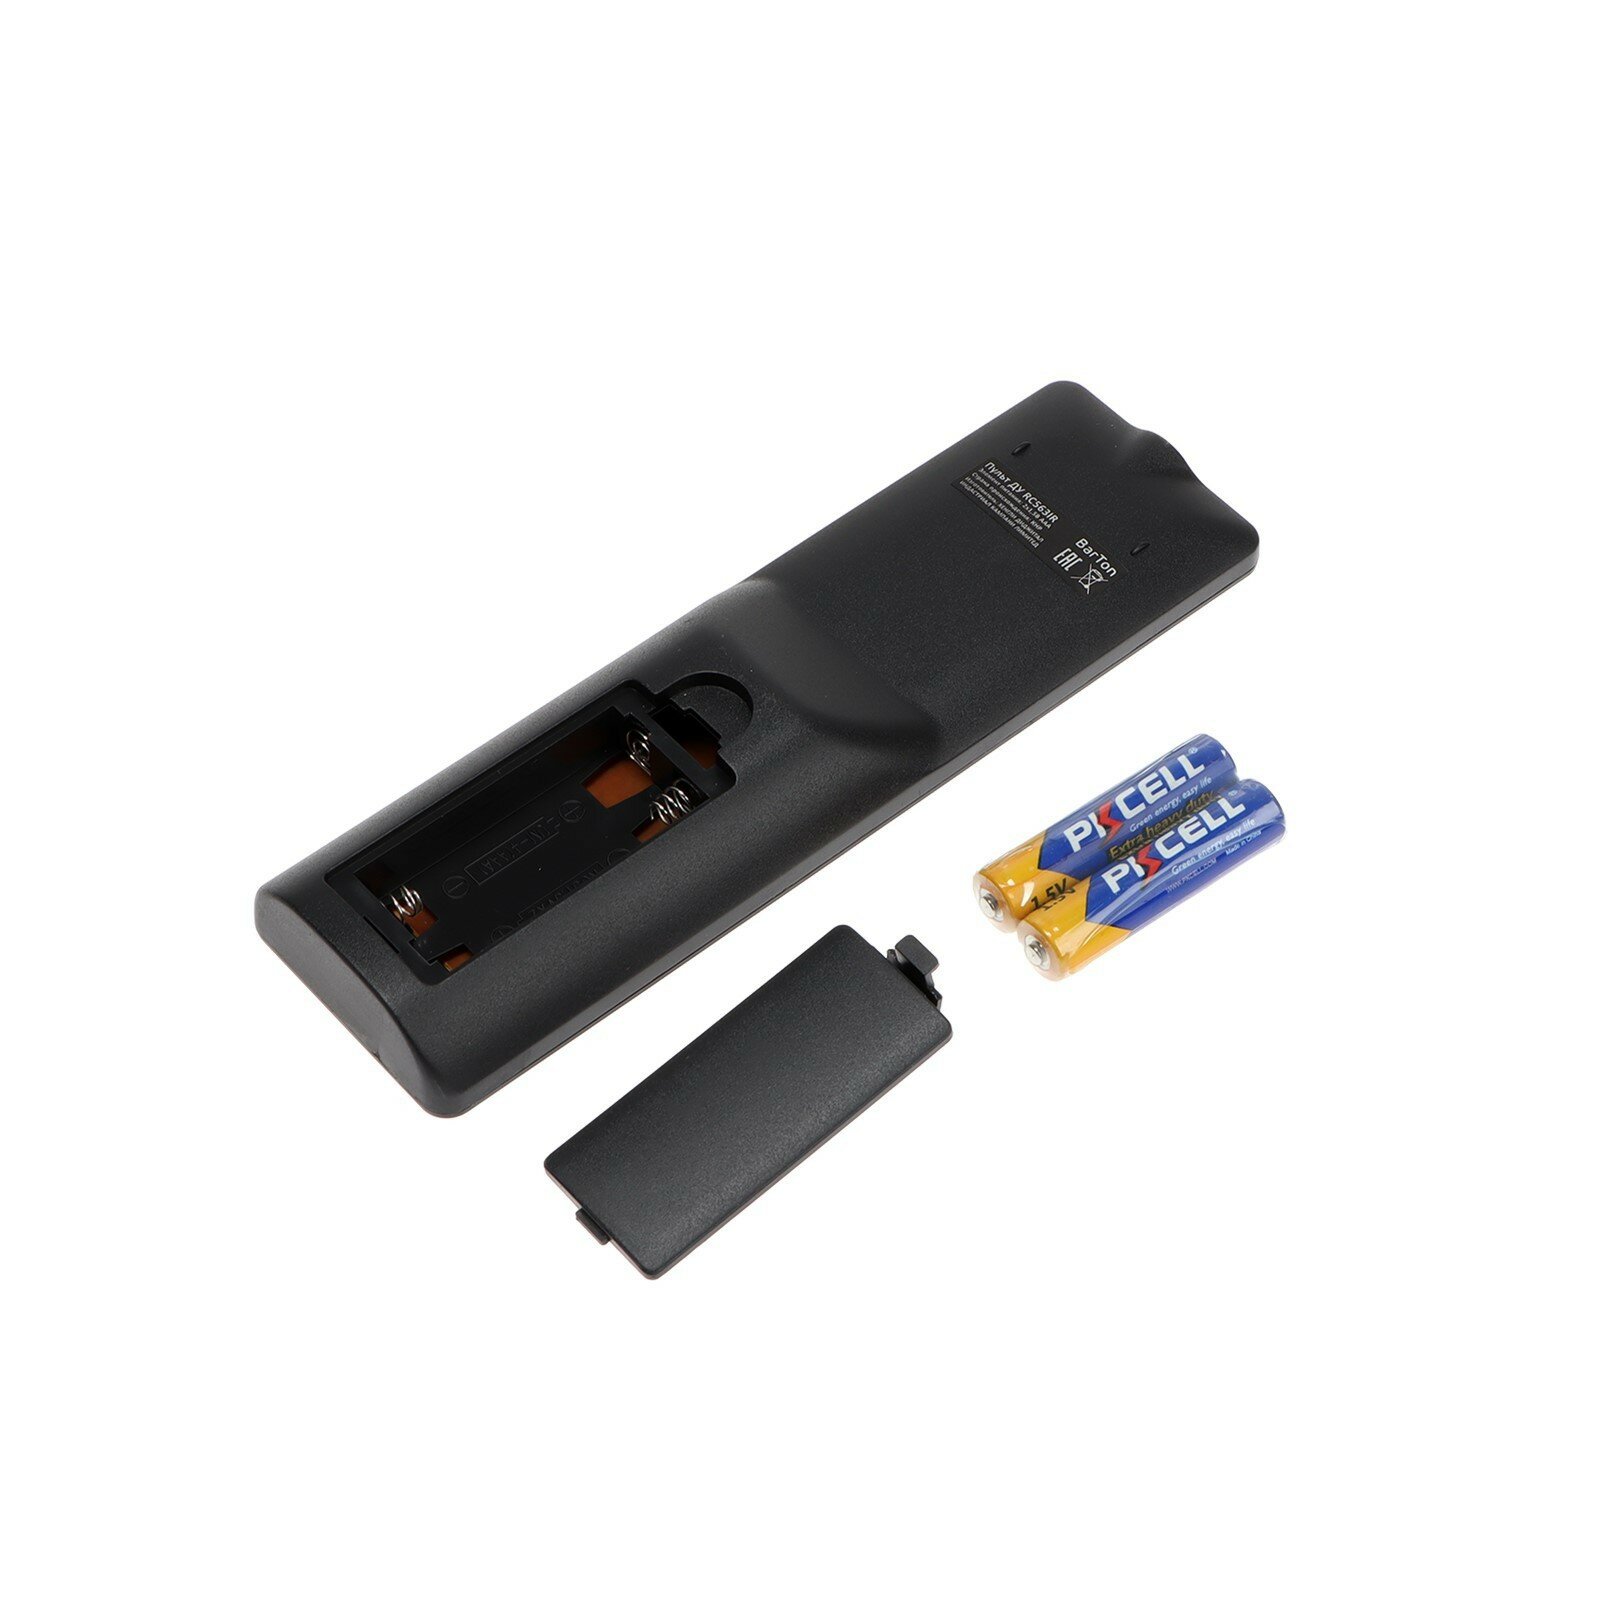 Приставка для цифрового ТВ TH-563 FullHD DVB-T2 HDMI USB чёрная